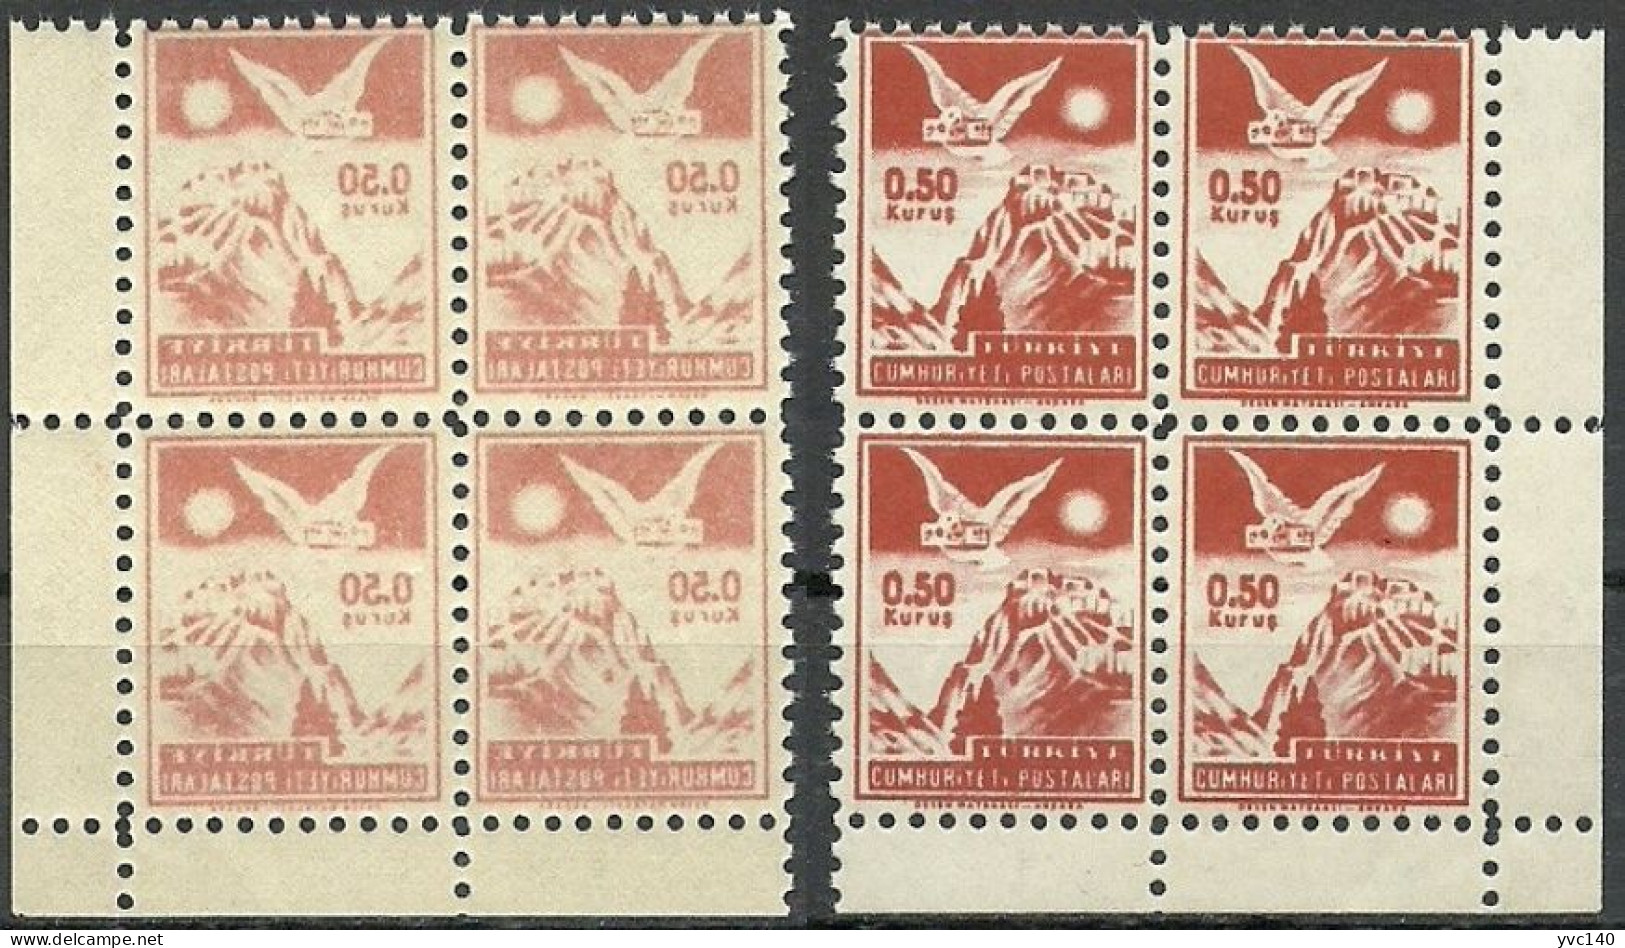 Turkey; 1954 "0.50 Kurus" Postage Stamp "Abklatsch Print" - Ongebruikt